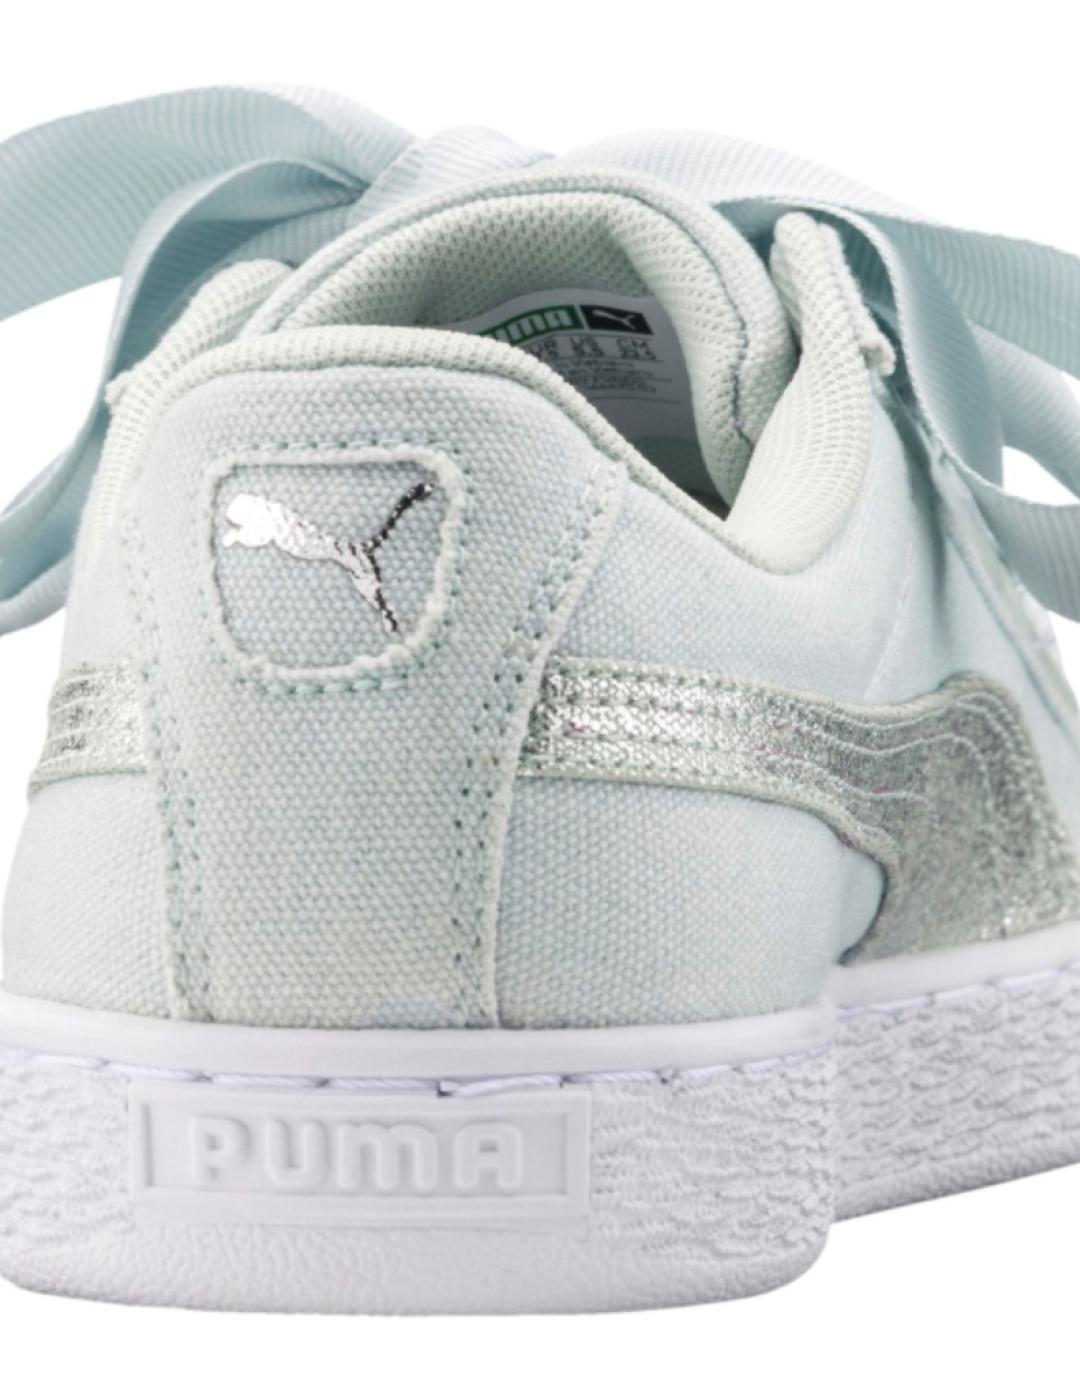 Zapatillas Puma Basket azul con lazo de mujer